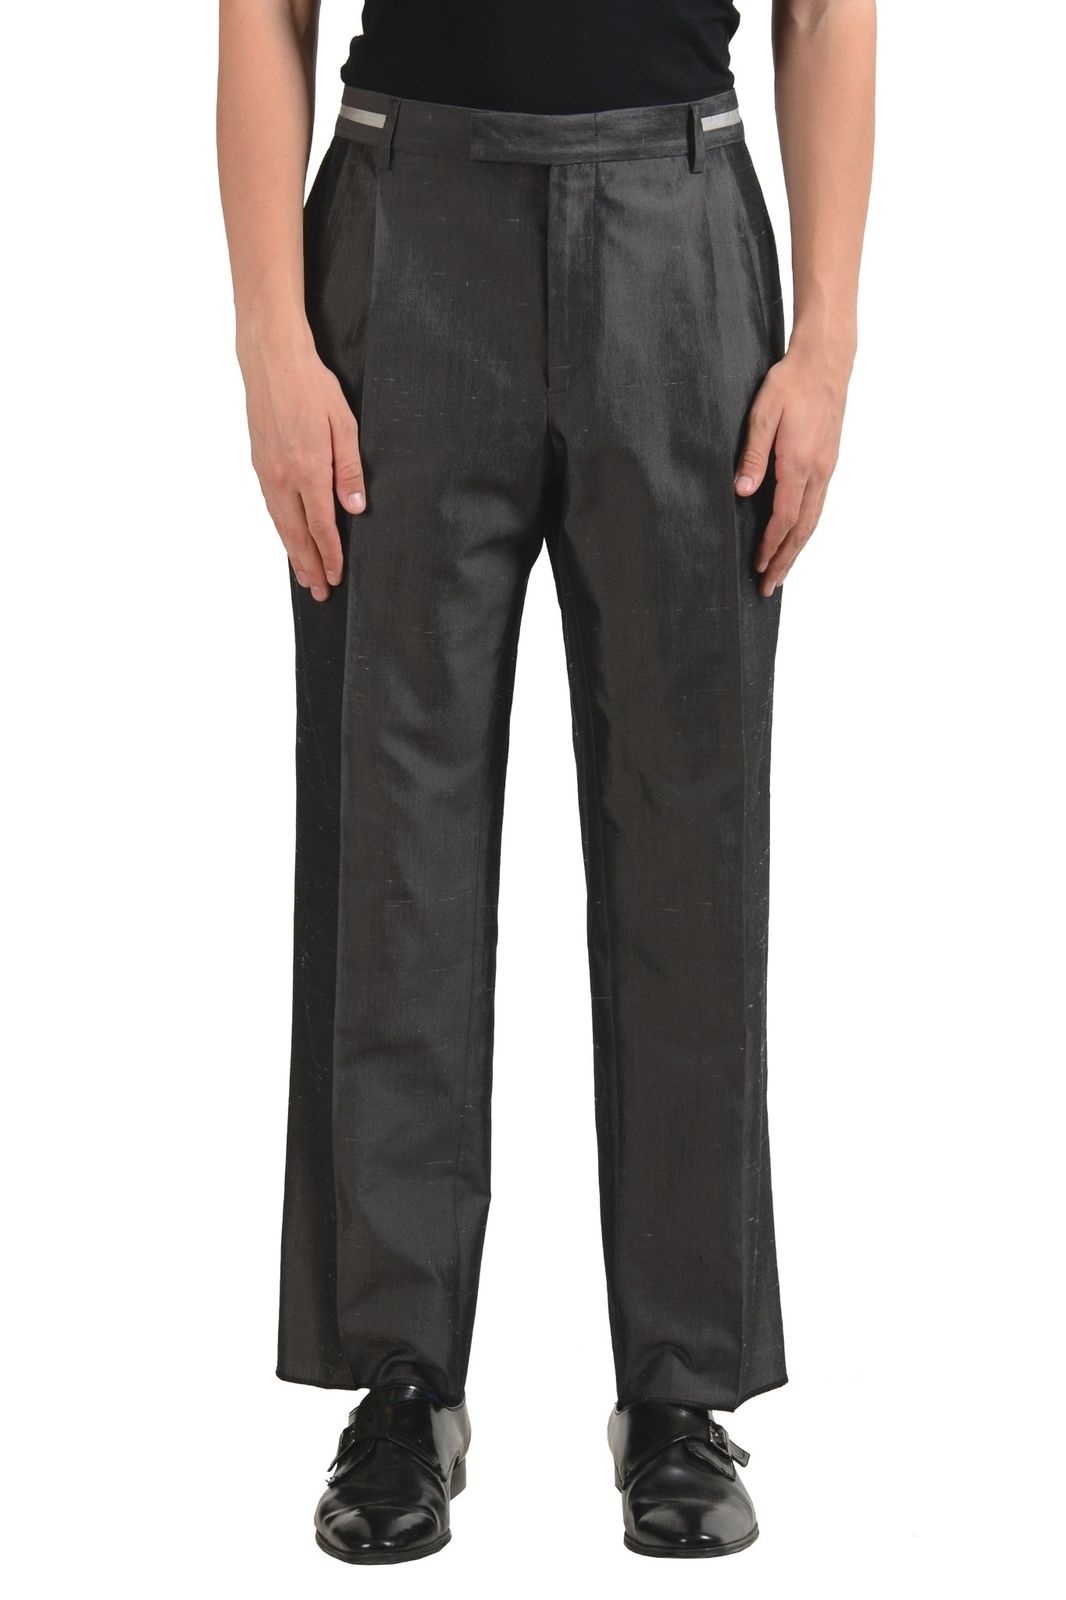 versace men's dress pants